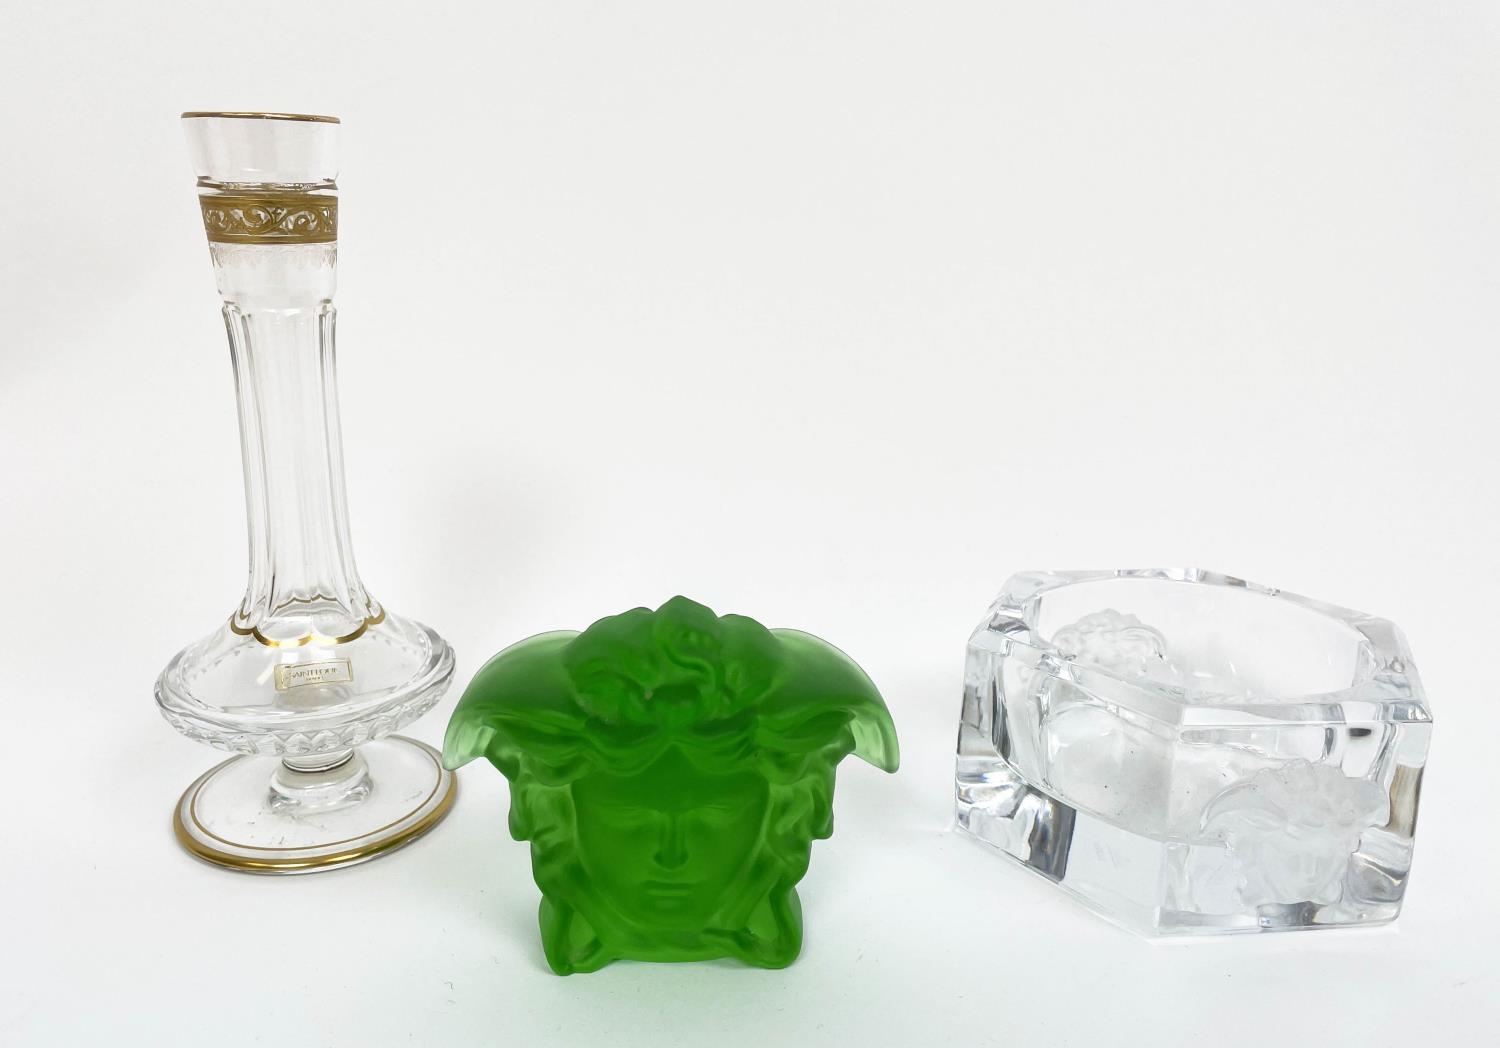 ROSENTHAL VERSACE MEDUSA PAPERWEIGHT, green crystal with a rosenthal clear crystal Versace medusa